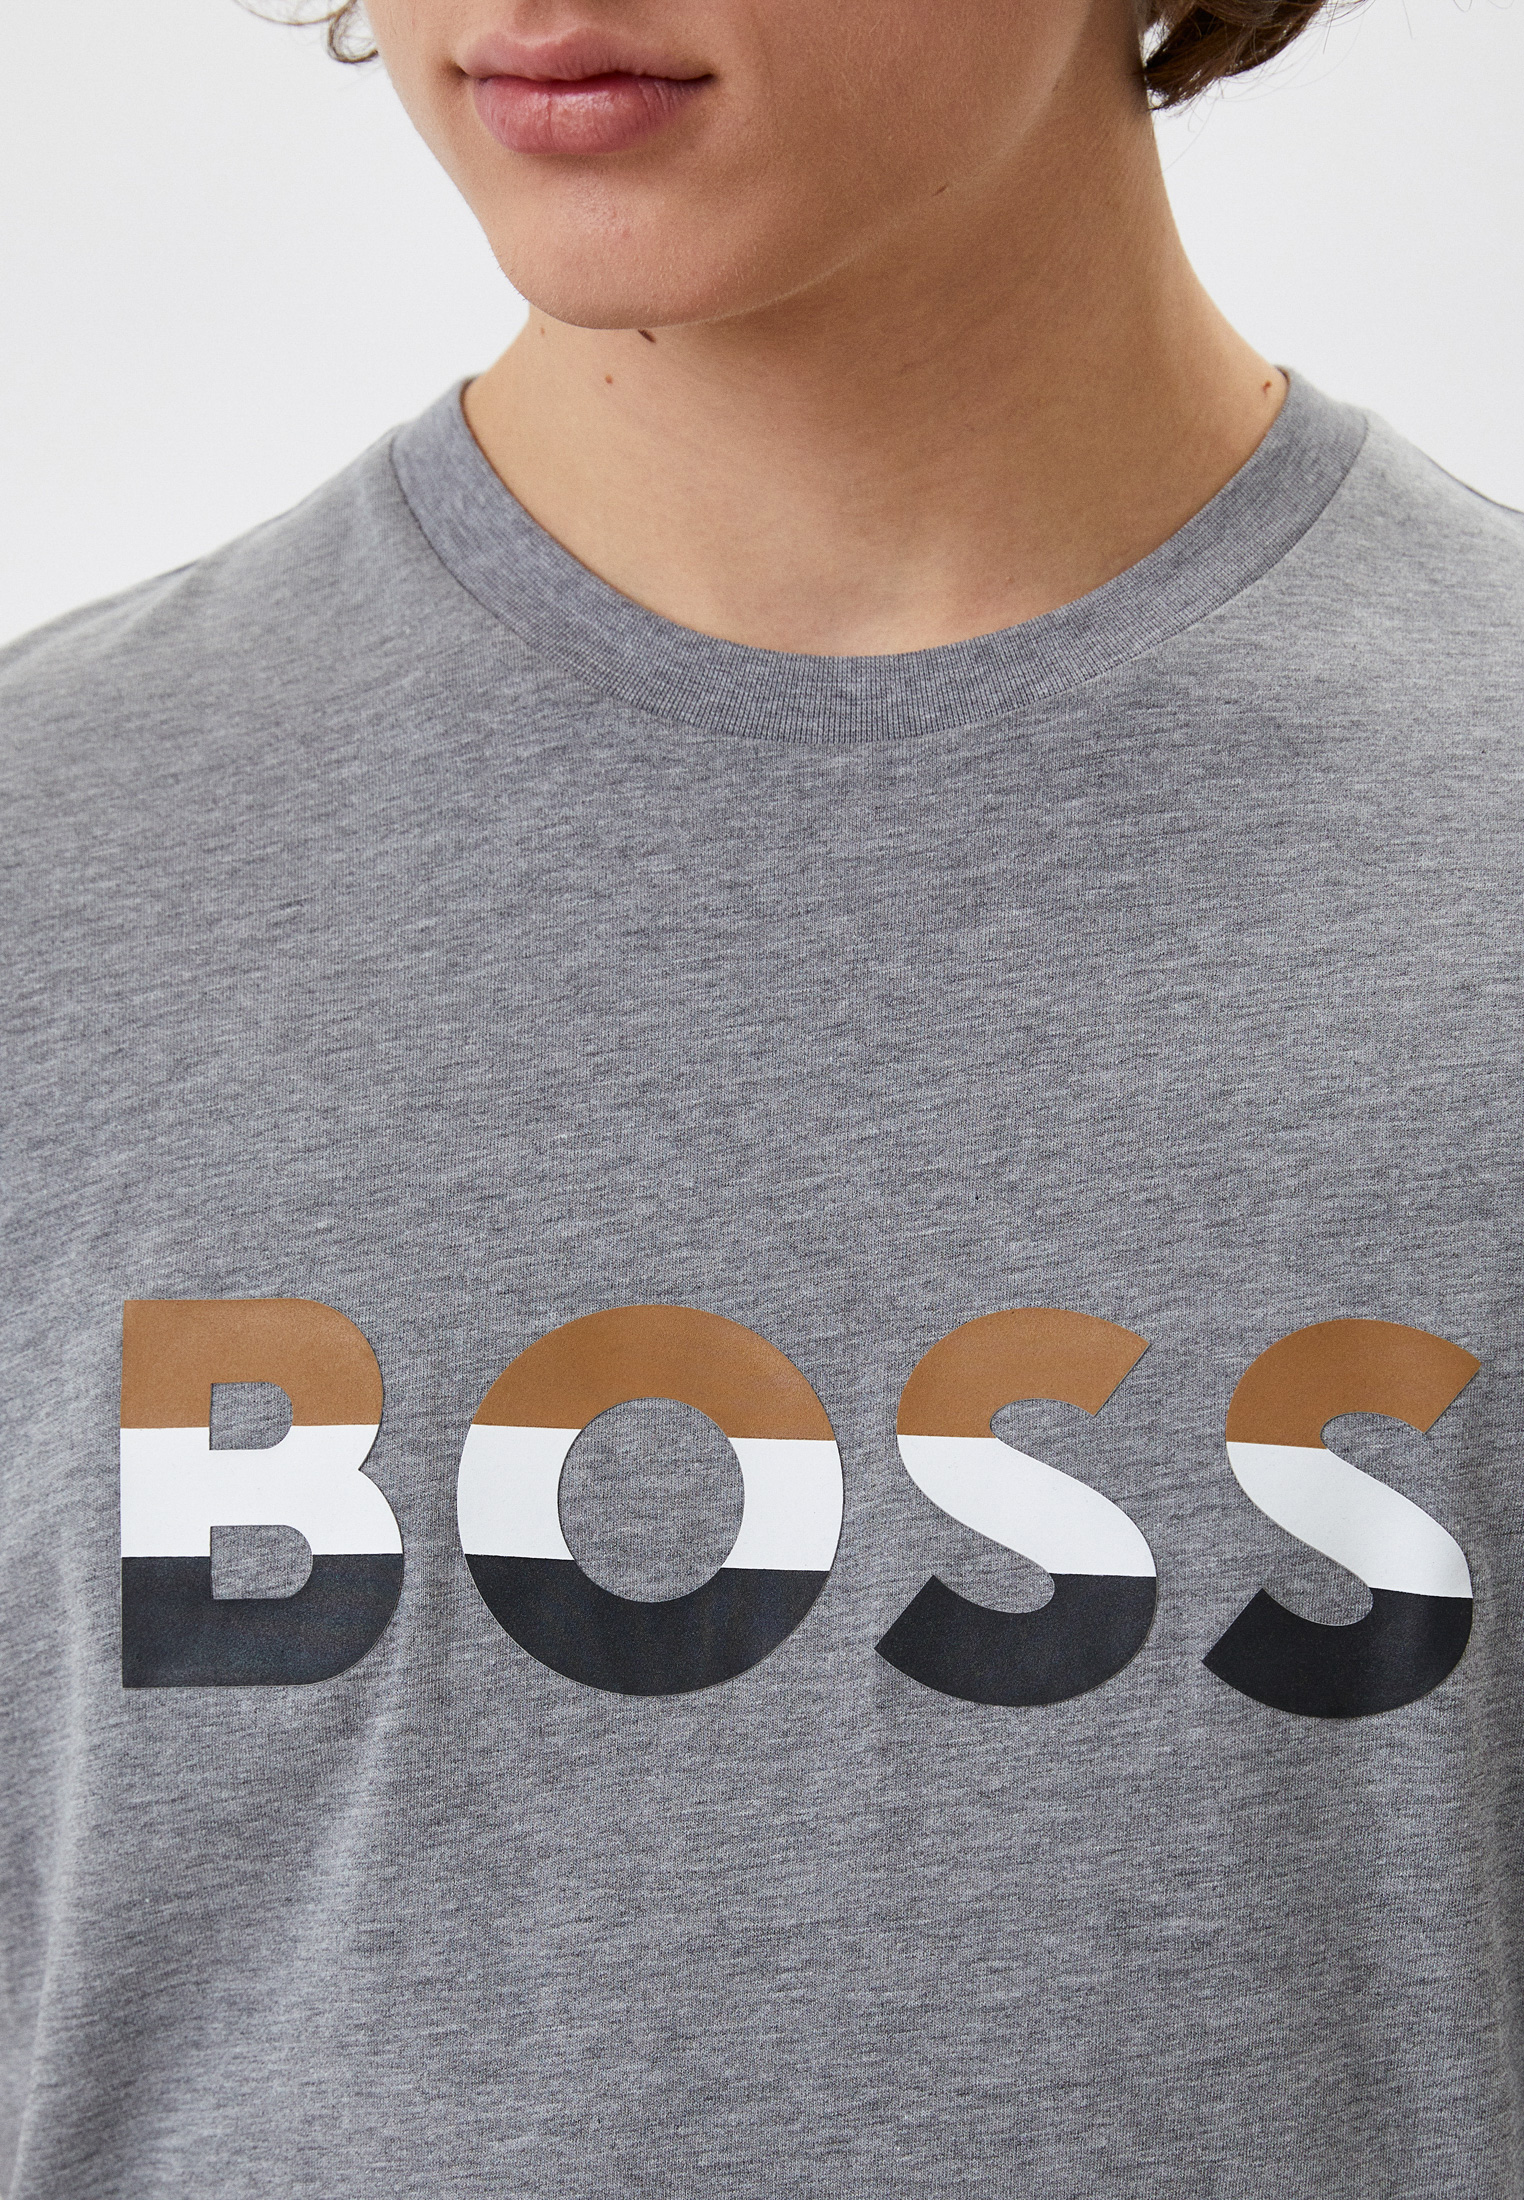 Мужская футболка Boss (Босс) 50467075: изображение 4